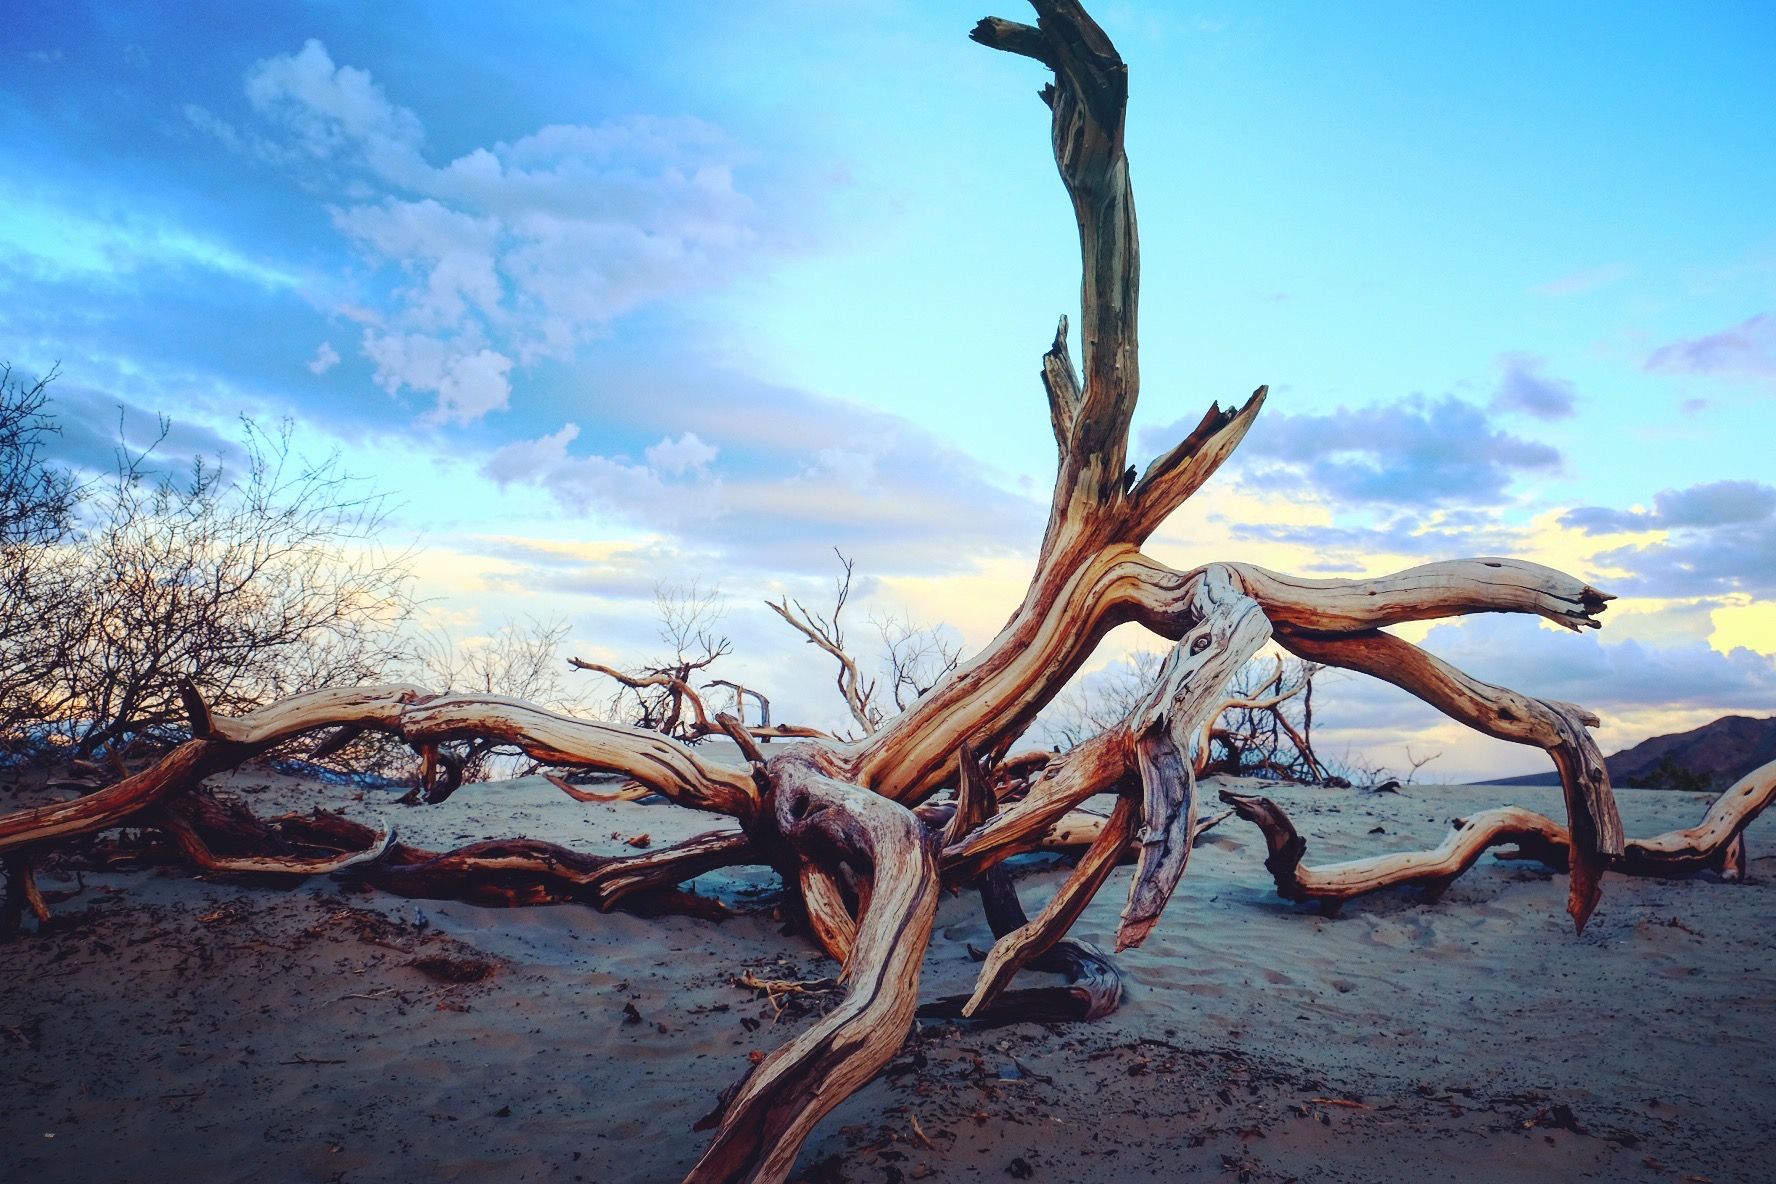 死亡谷国家公园 是目前最好玩的公园 沙漠的枯树 坏水 石头与拱门 握不住的沙  拱门 独特风貌的山峰